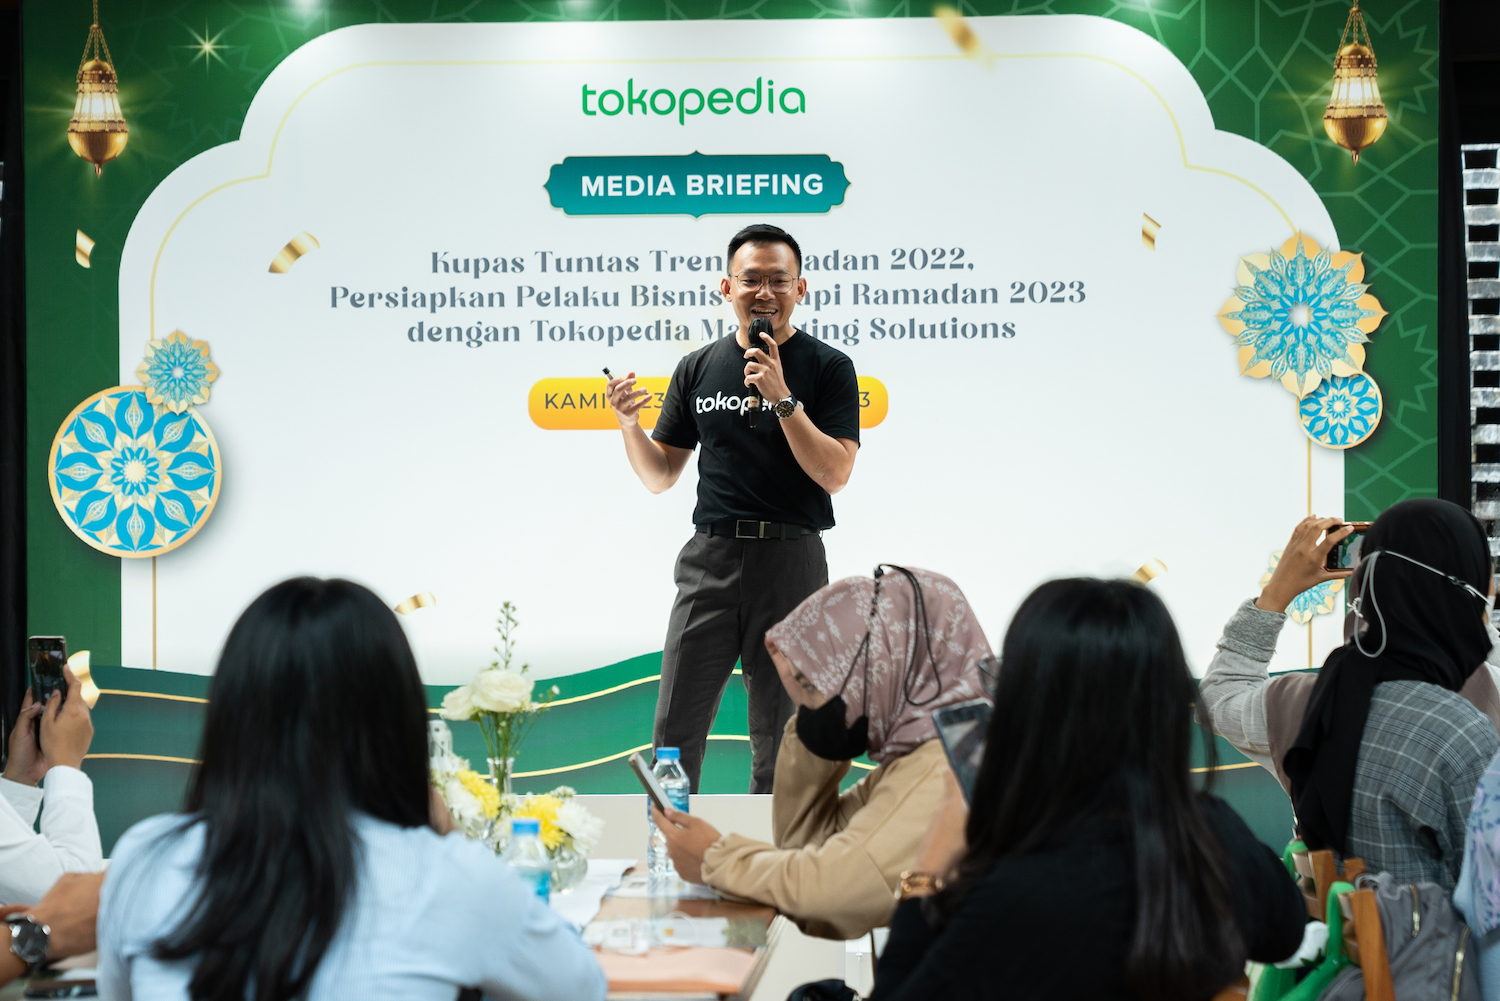 Jelang Ramadhan 2023, Tokopedia Hadirkan Solusi Pemasaran Bagi Pelaku Bisnis